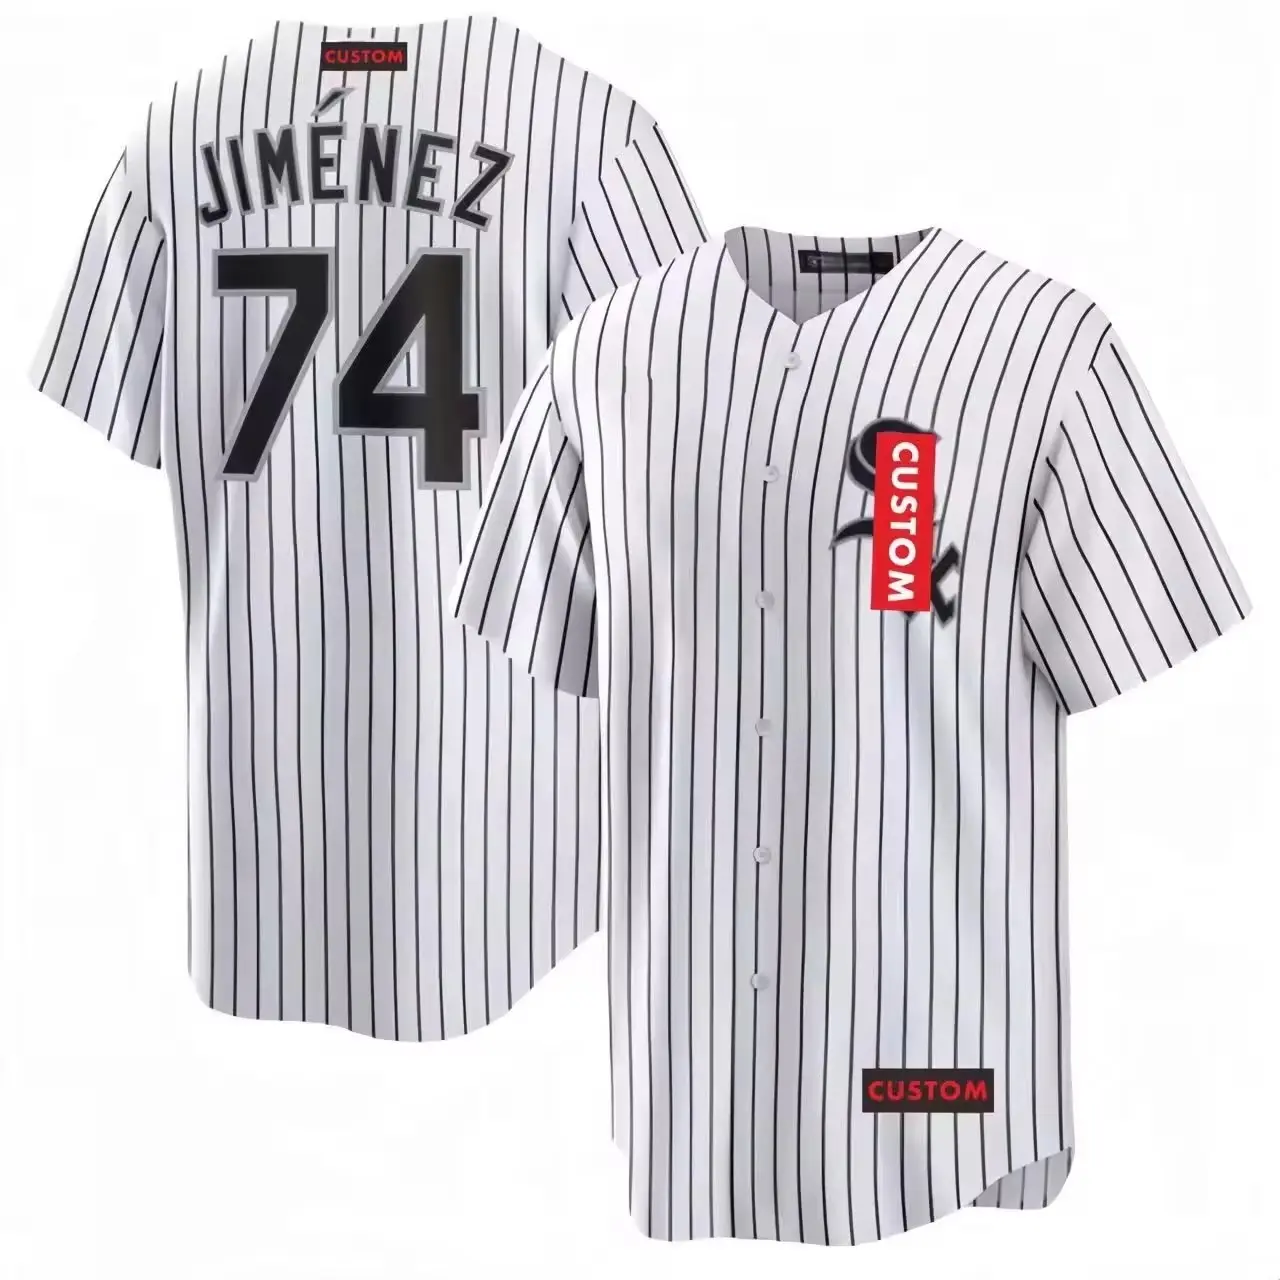 Jersey Baseball Whitesox Beisbol Major Leagueunisex Mbl Custom Embroidery Stripe For Kids Oem Baseball & Softball Wear